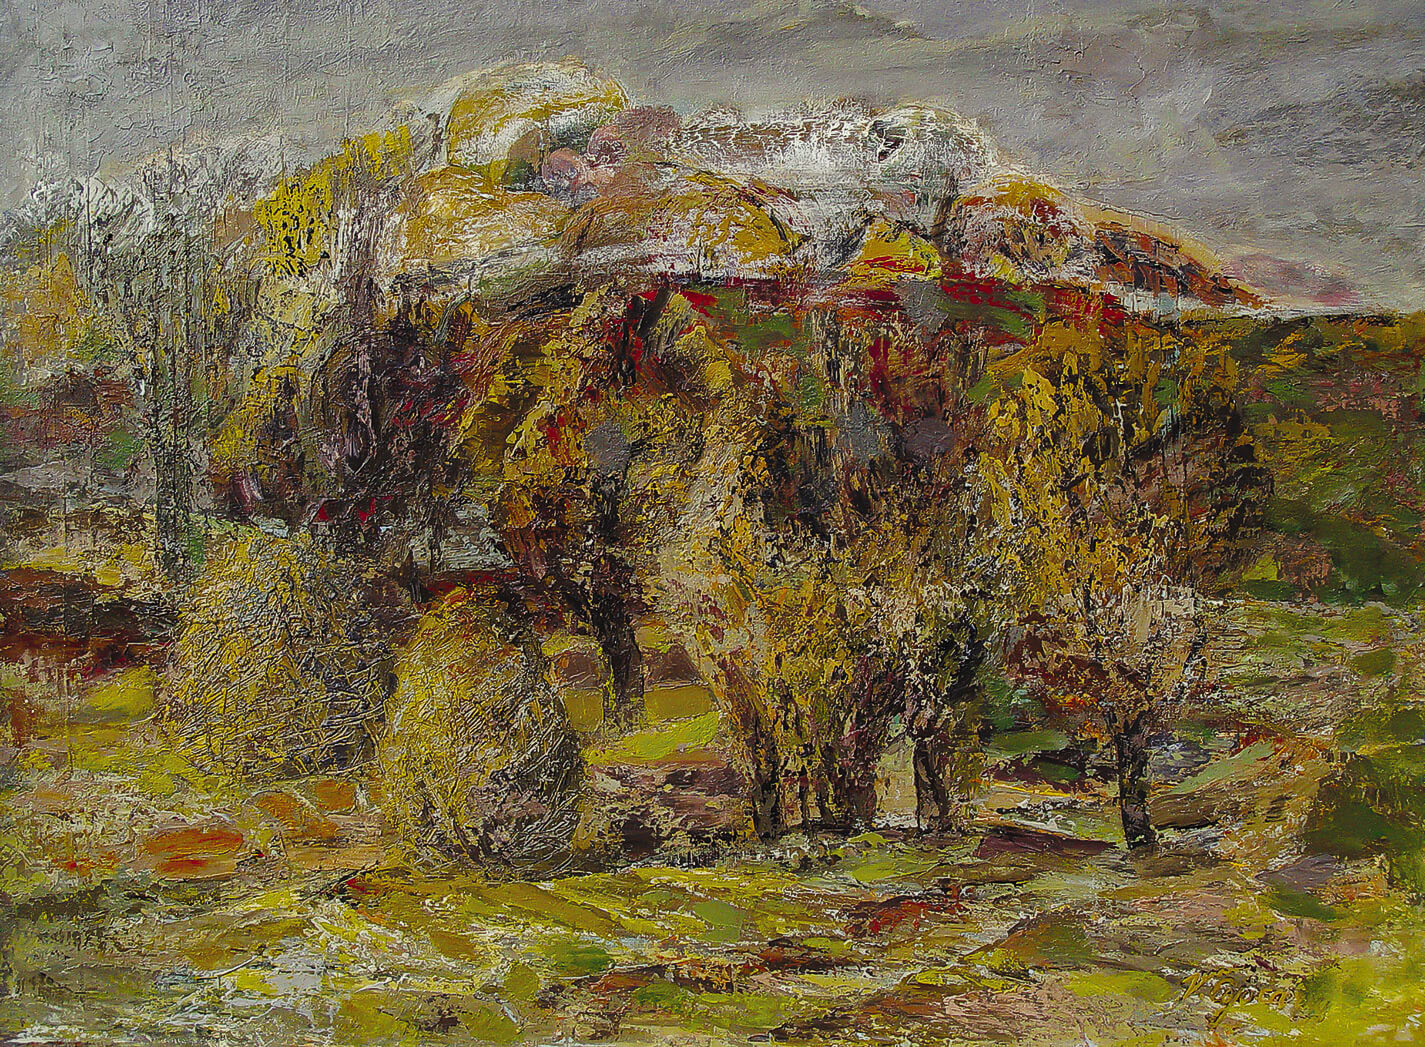 Slopes. Baraboi. Painting by Vasile cojocaru